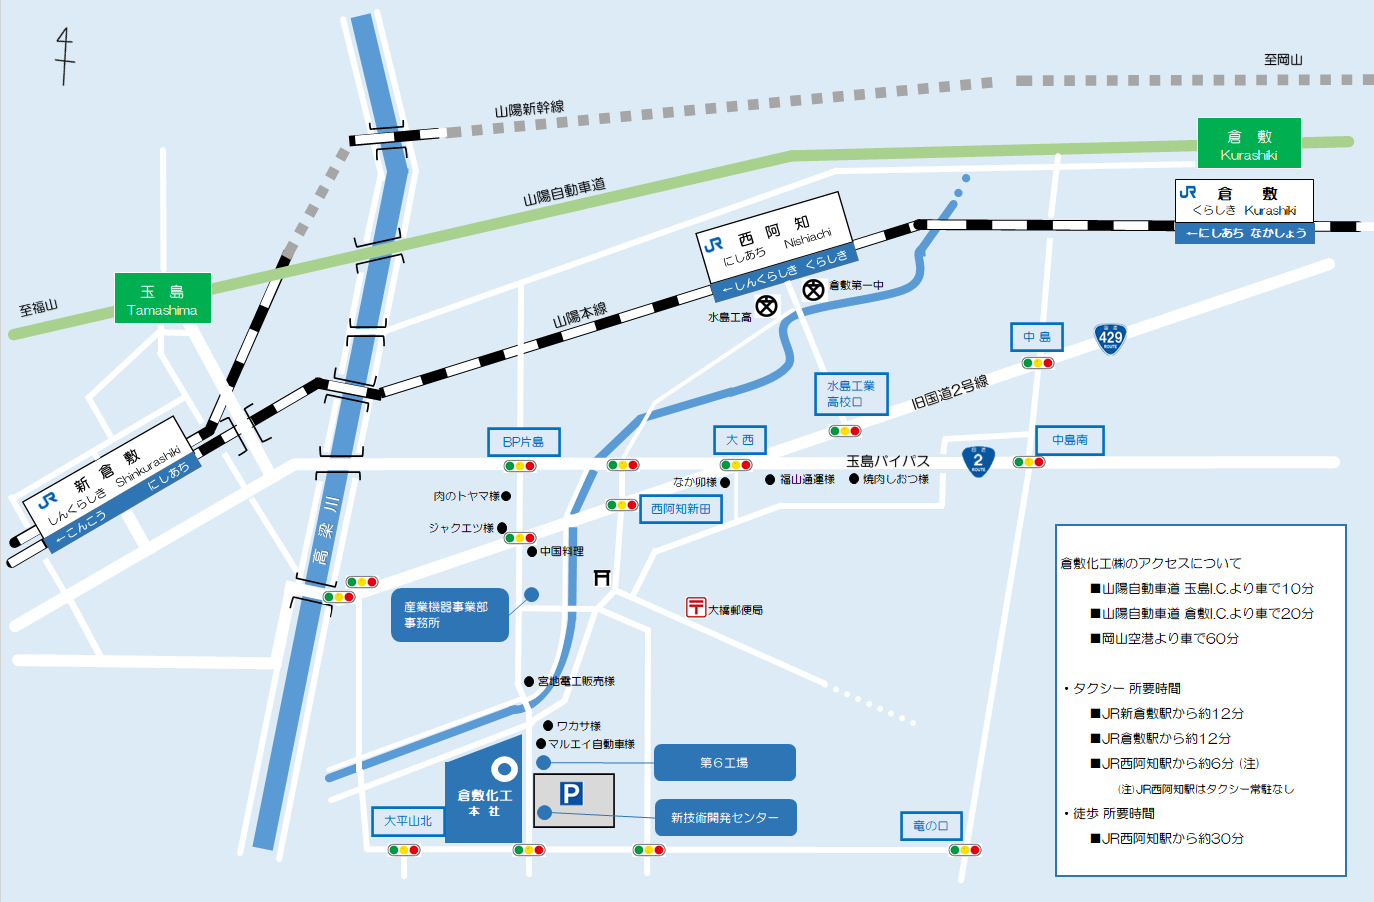 Kurashiki Kako Co., Ltd Head Office Map